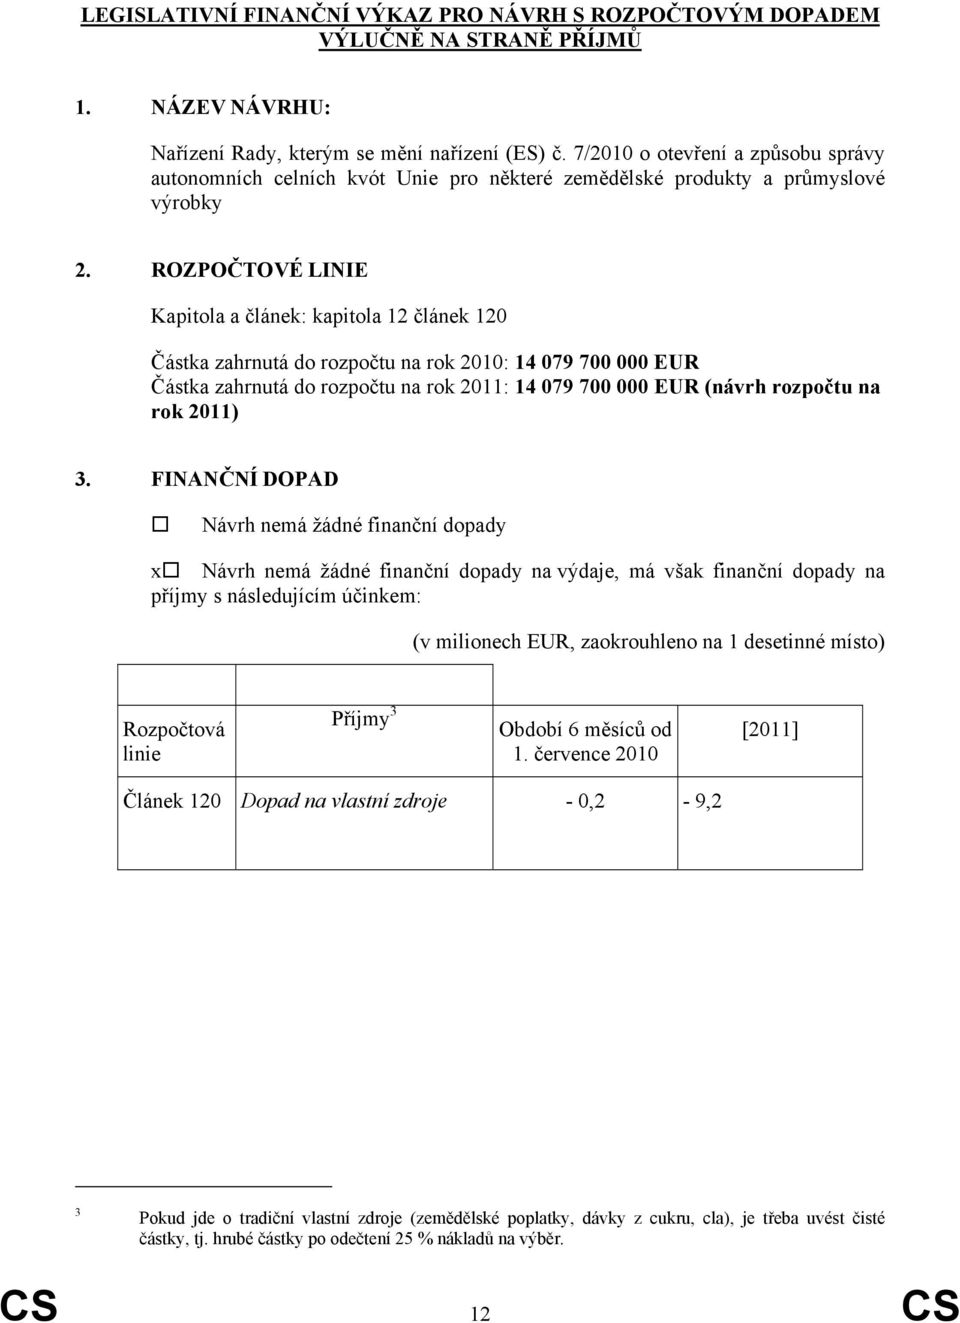 ROZPOČTOVÉ LINIE Kapitola a článek: kapitola 12 článek 120 Částka zahrnutá do rozpočtu na rok 2010: 14 079 700 000 EUR Částka zahrnutá do rozpočtu na rok 2011: 14 079 700 000 EUR (návrh rozpočtu na